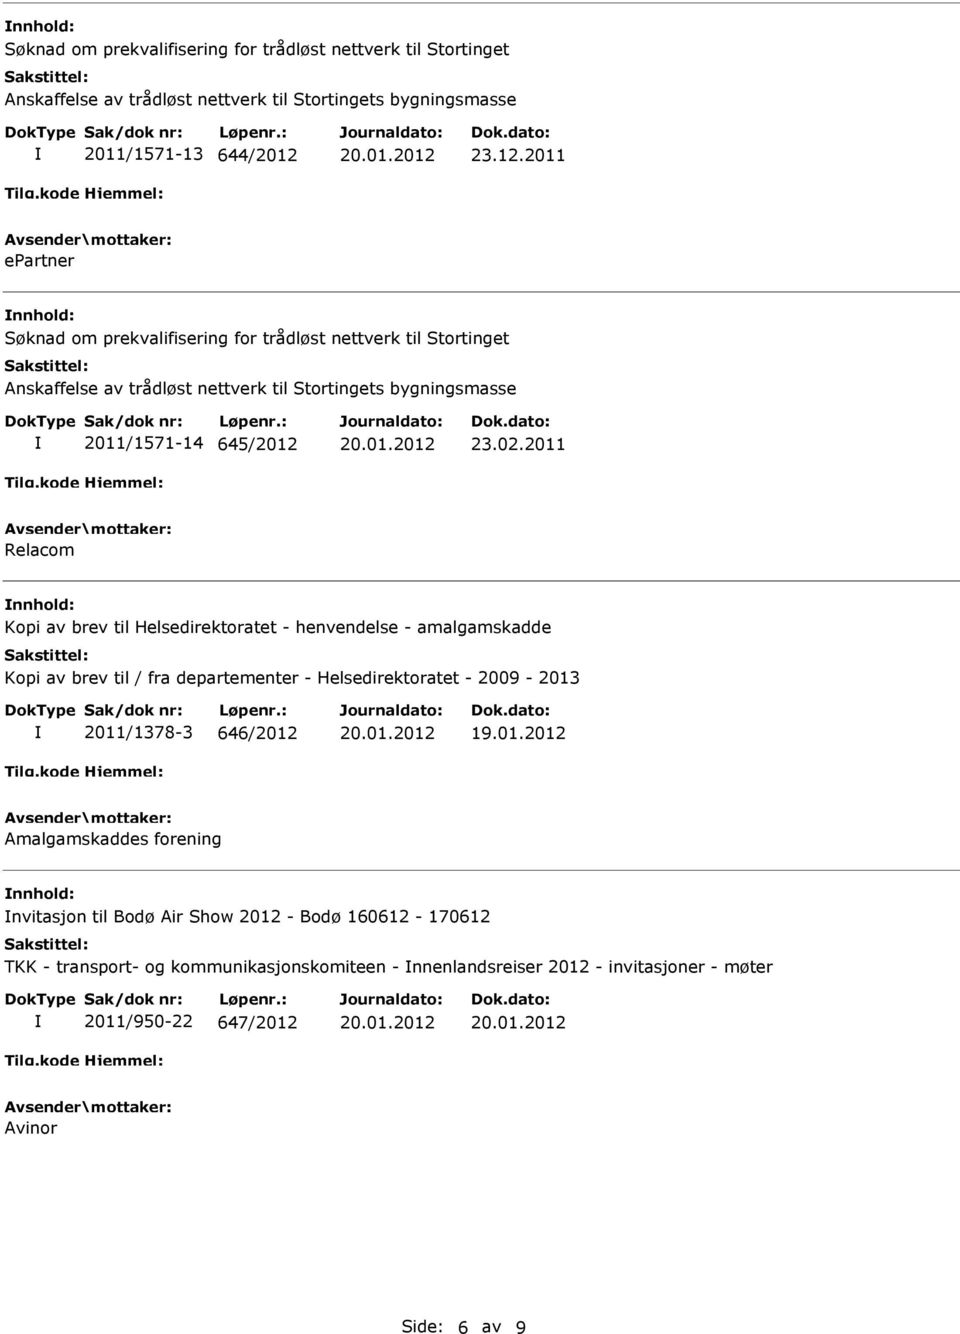 departementer - Helsedirektoratet - 2009-2013 2011/1378-3 646/2012 Amalgamskaddes forening nvitasjon til Bodø